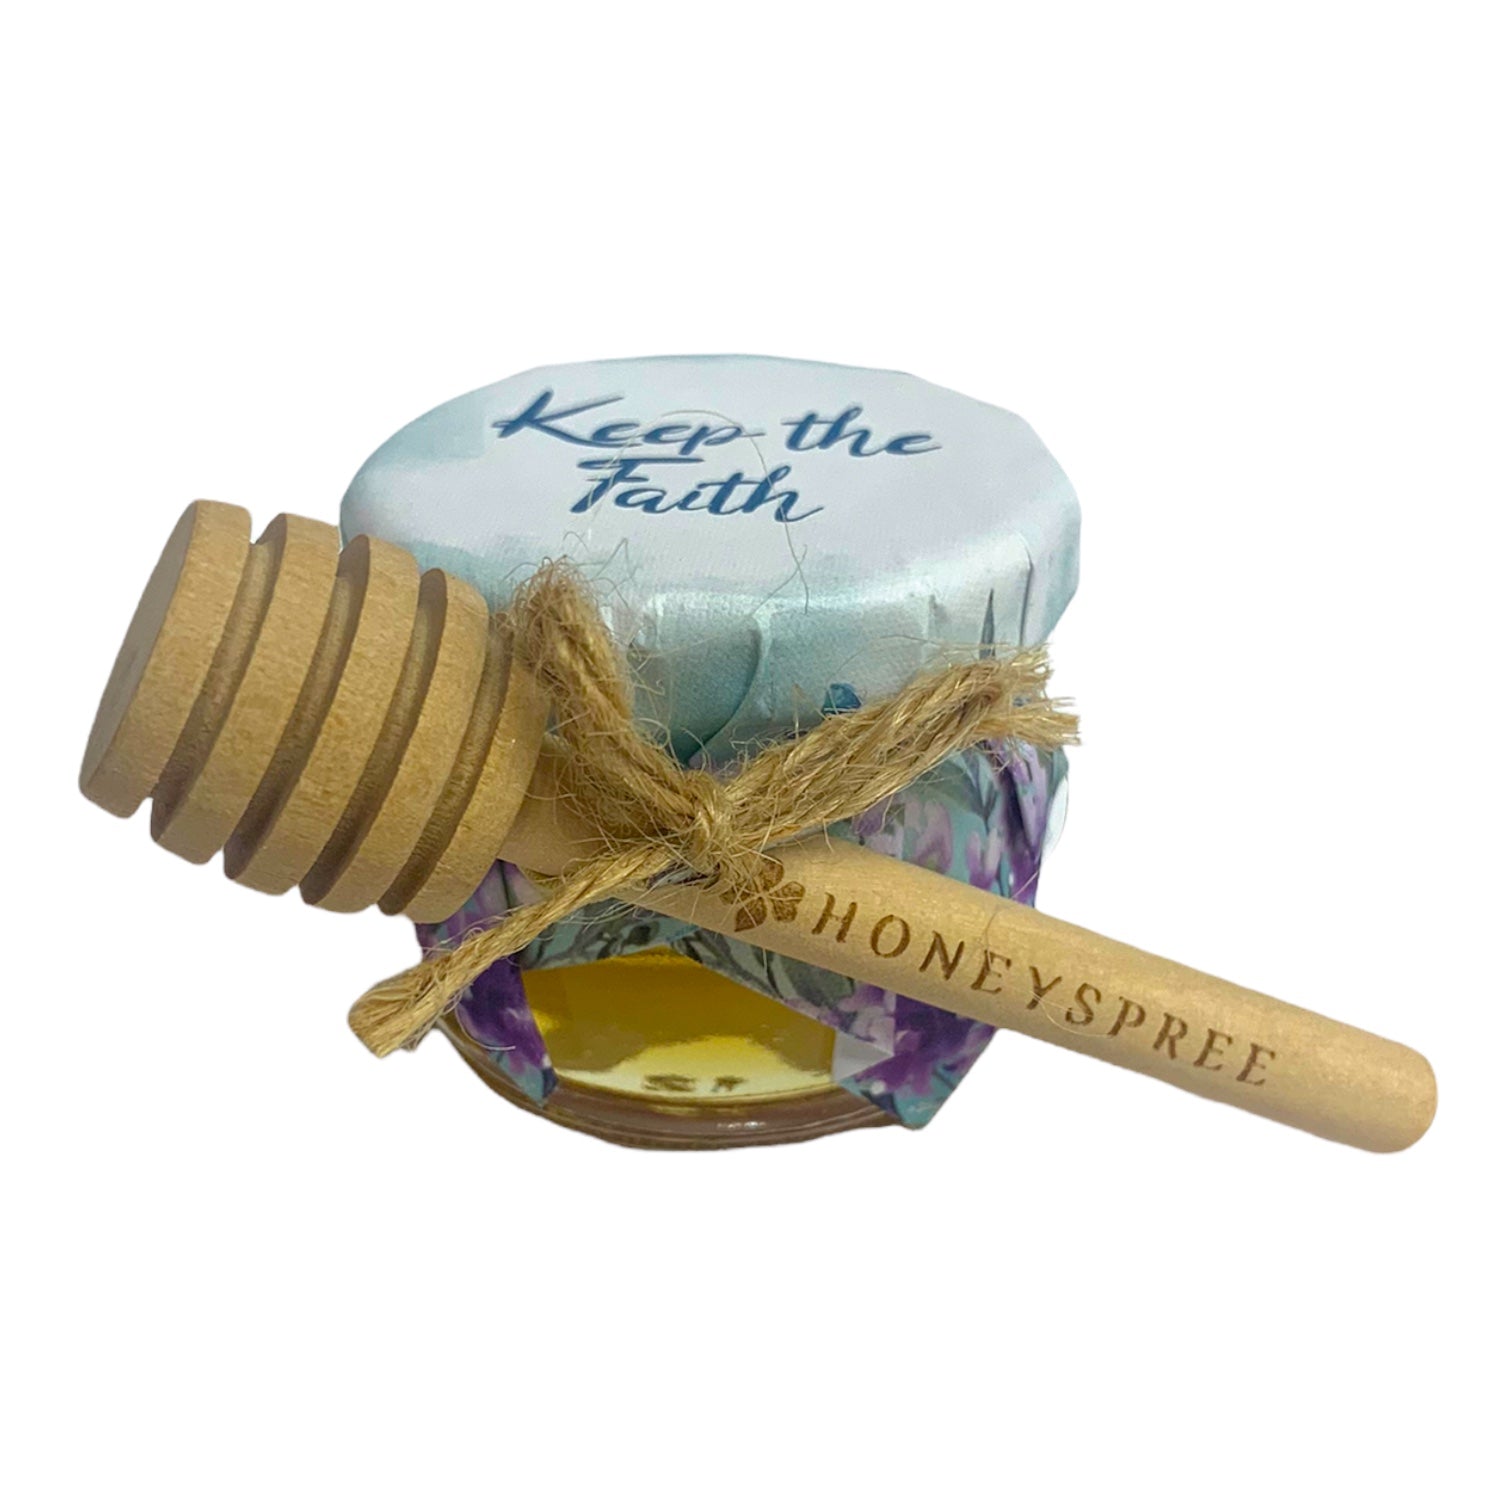 Motivational Honey Gifts - Keep the Faith